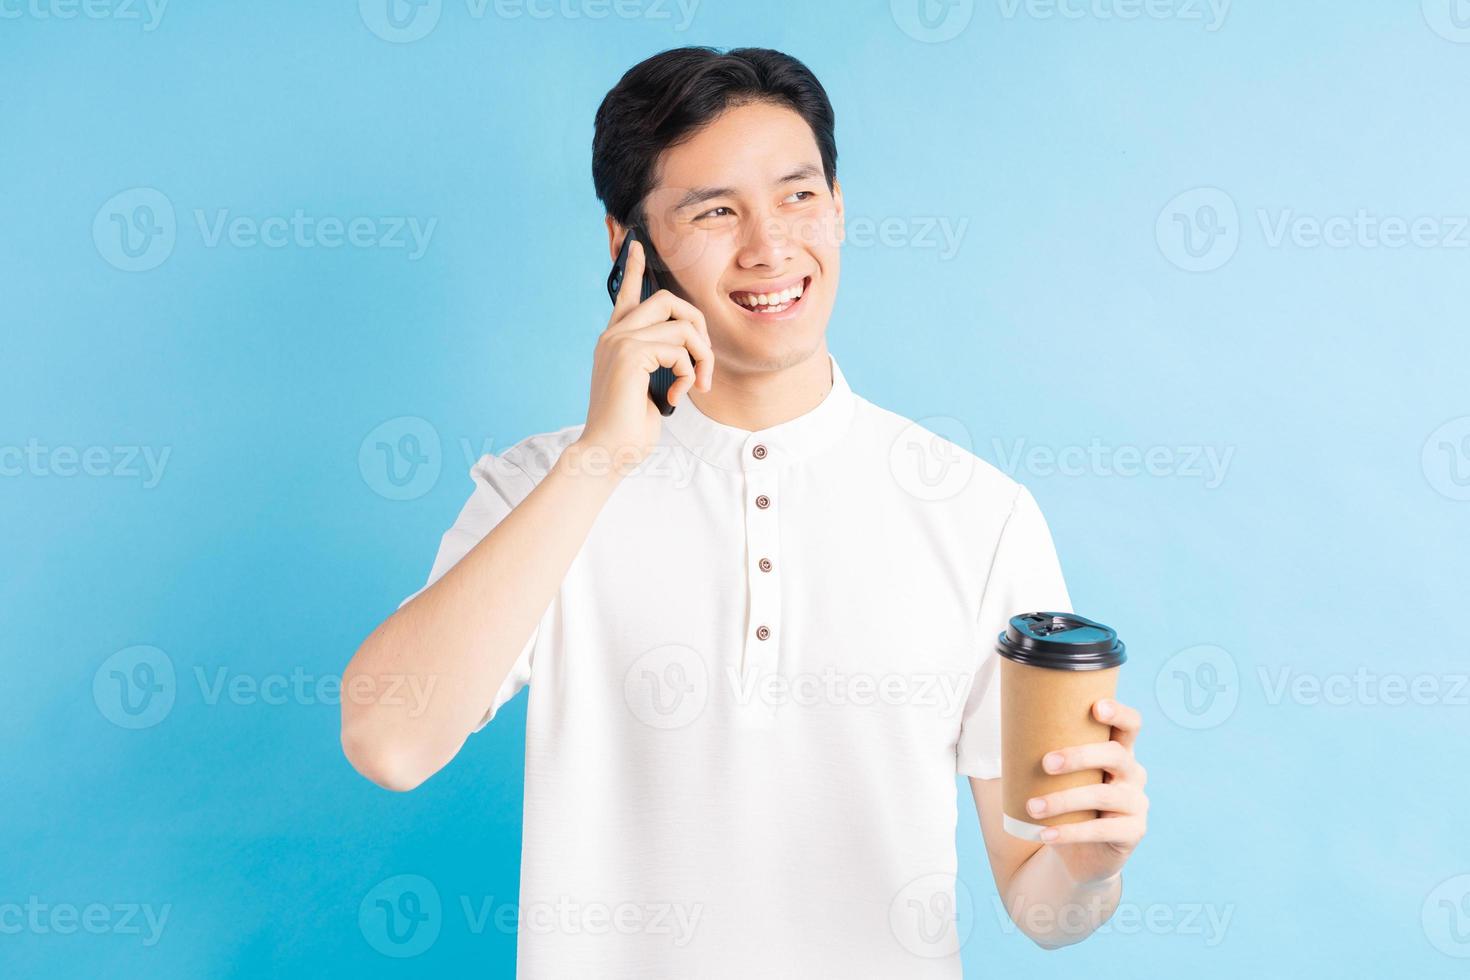 een foto van een knappe Aziatische man die belt en een kopje koffie in zijn hand houdt